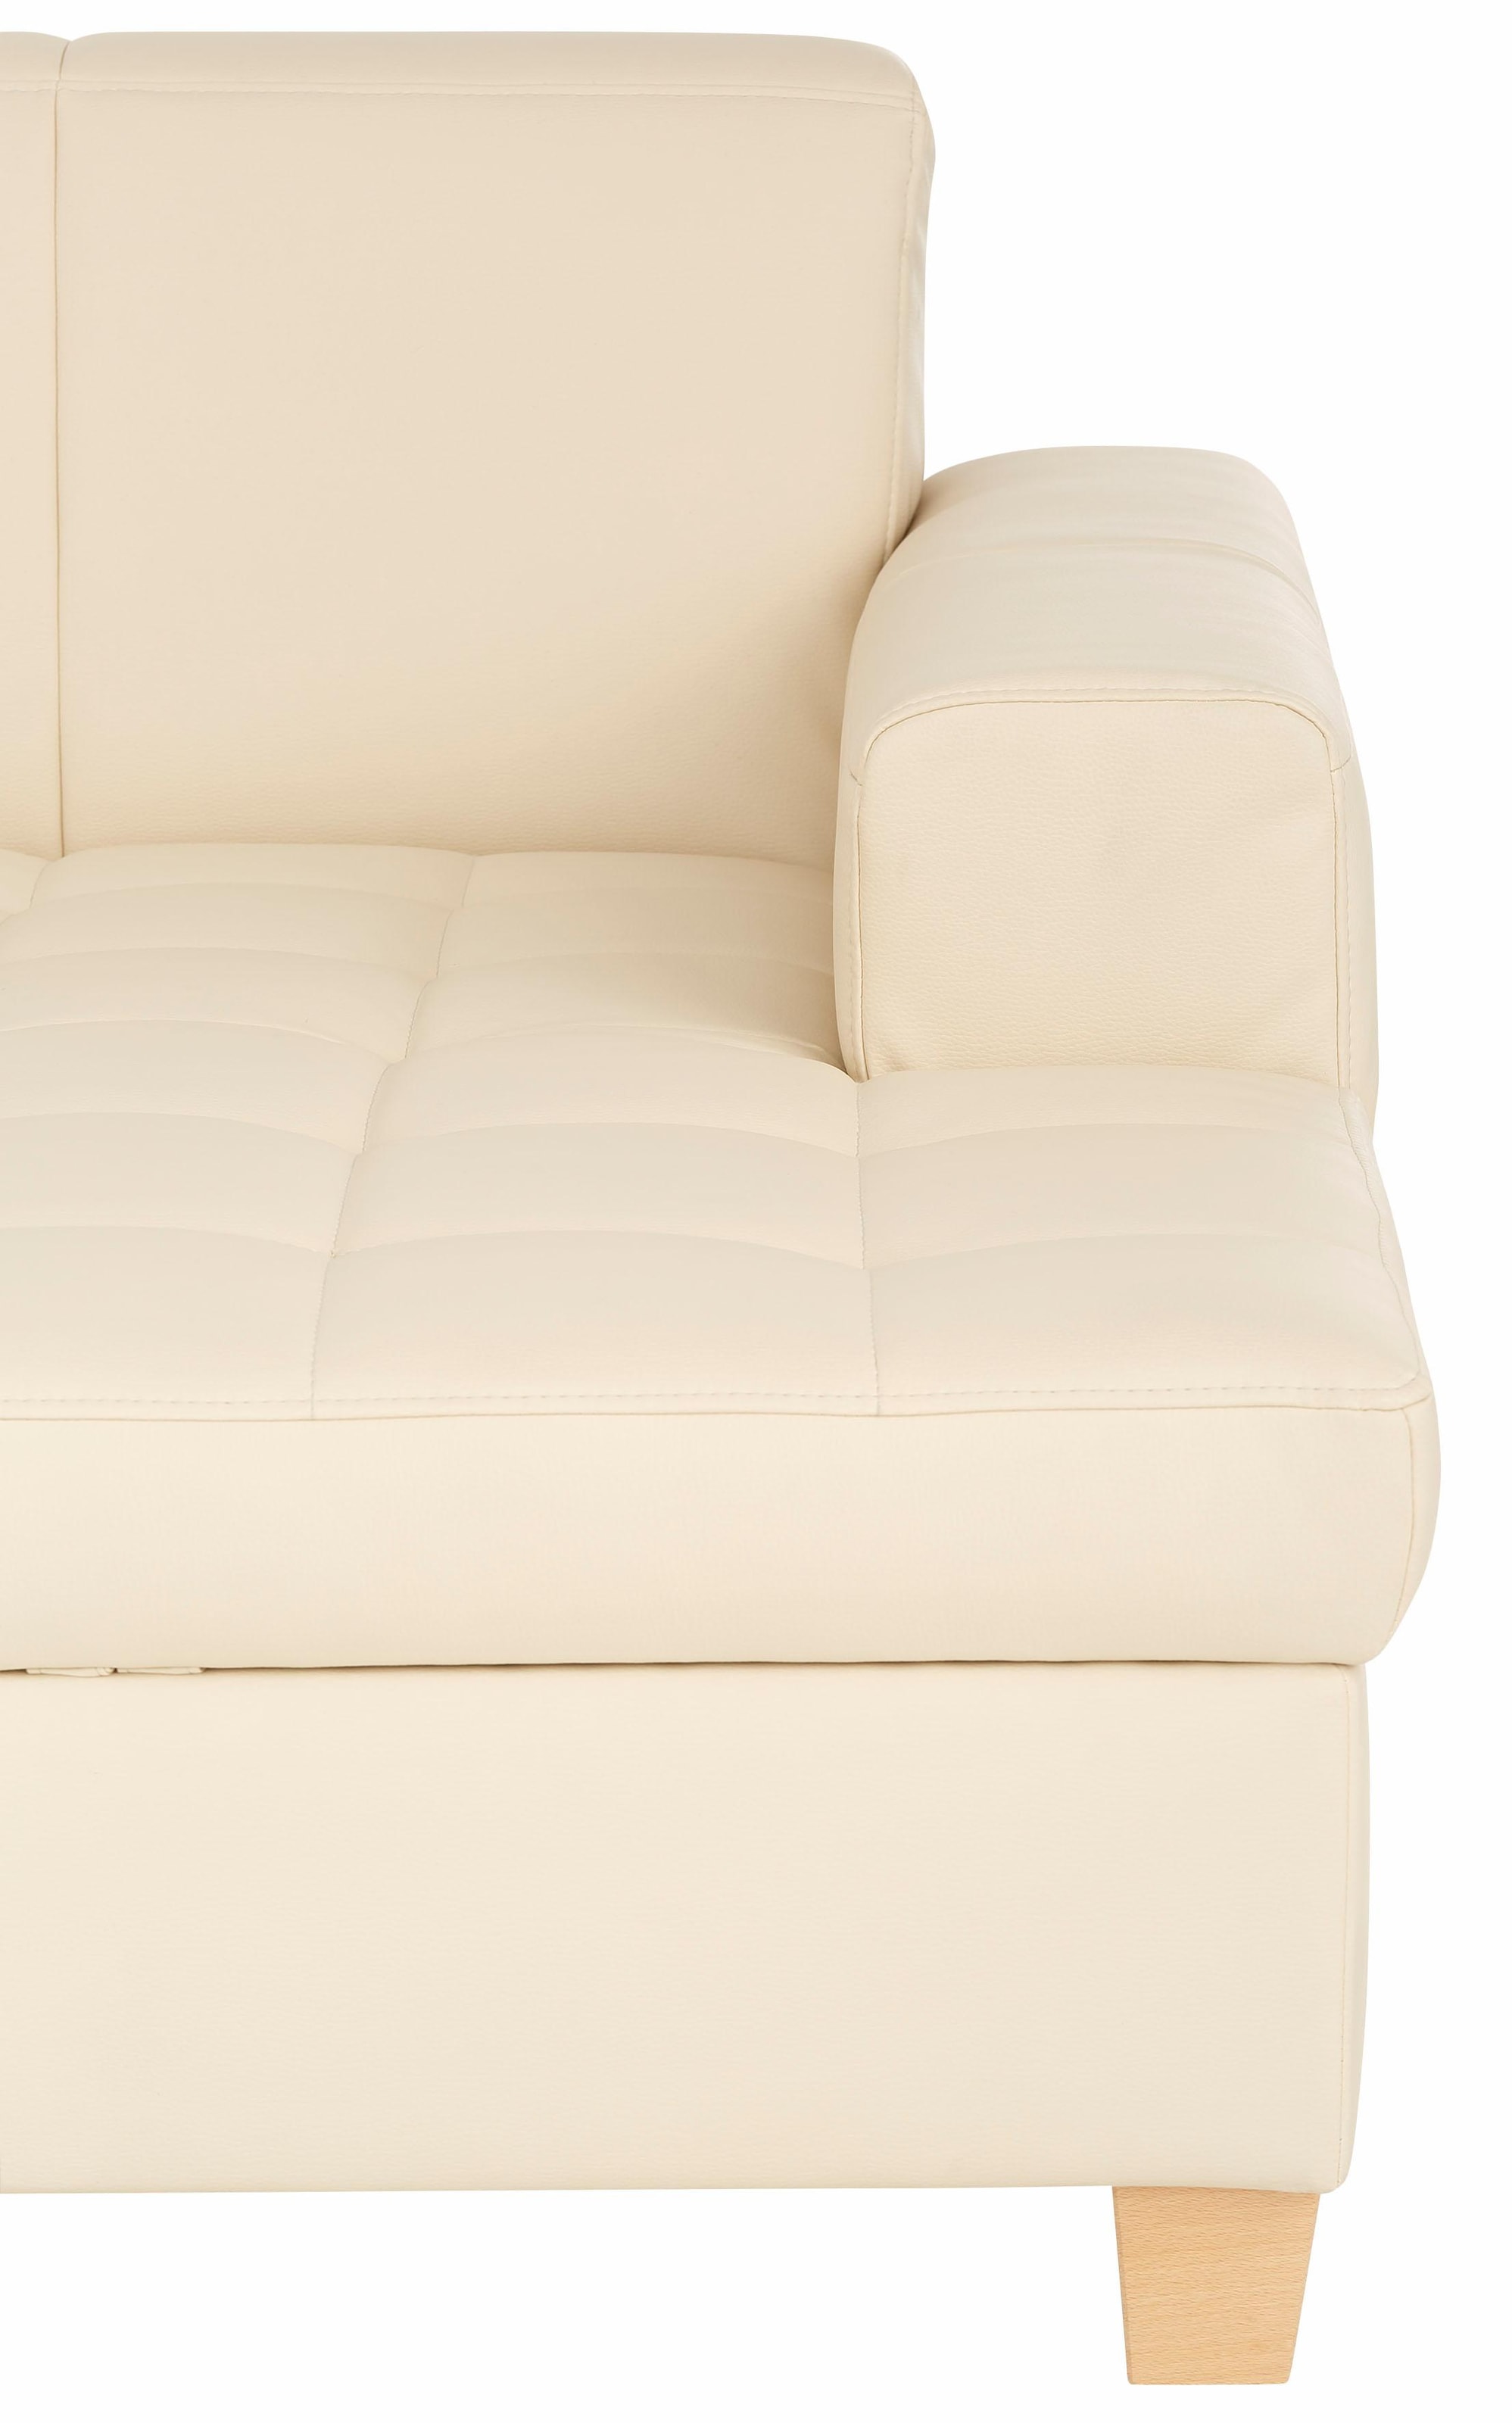 Home affaire Ecksofa »Corby L-Form«, wahlweise mit Bettfunktion, Steppung auf Sitzfläche